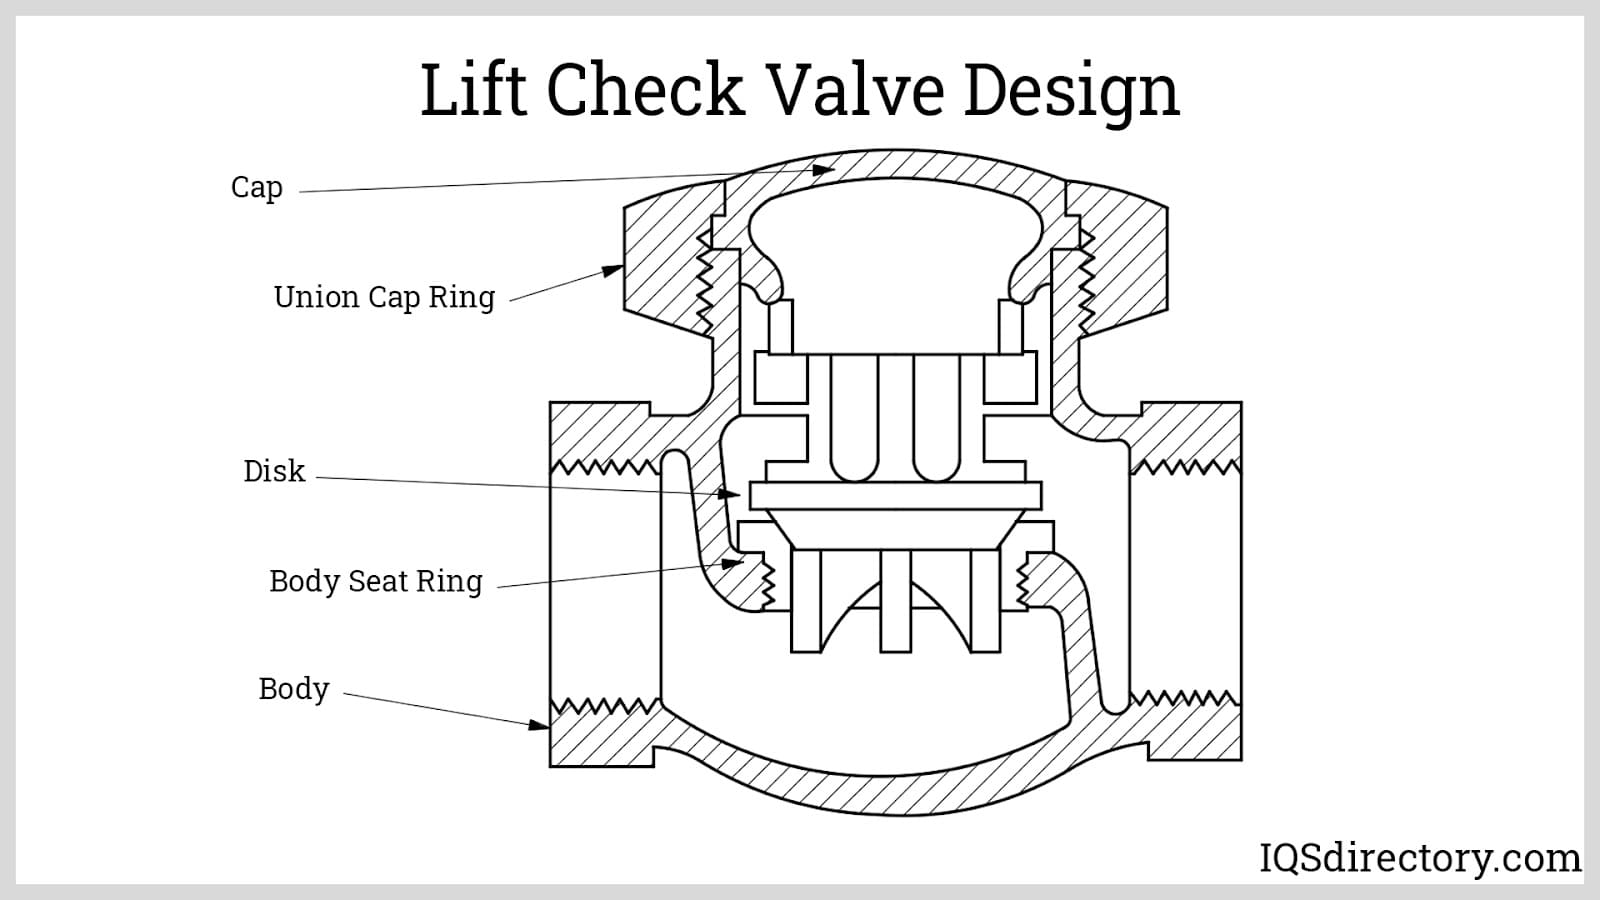 Lift Check Valve Design